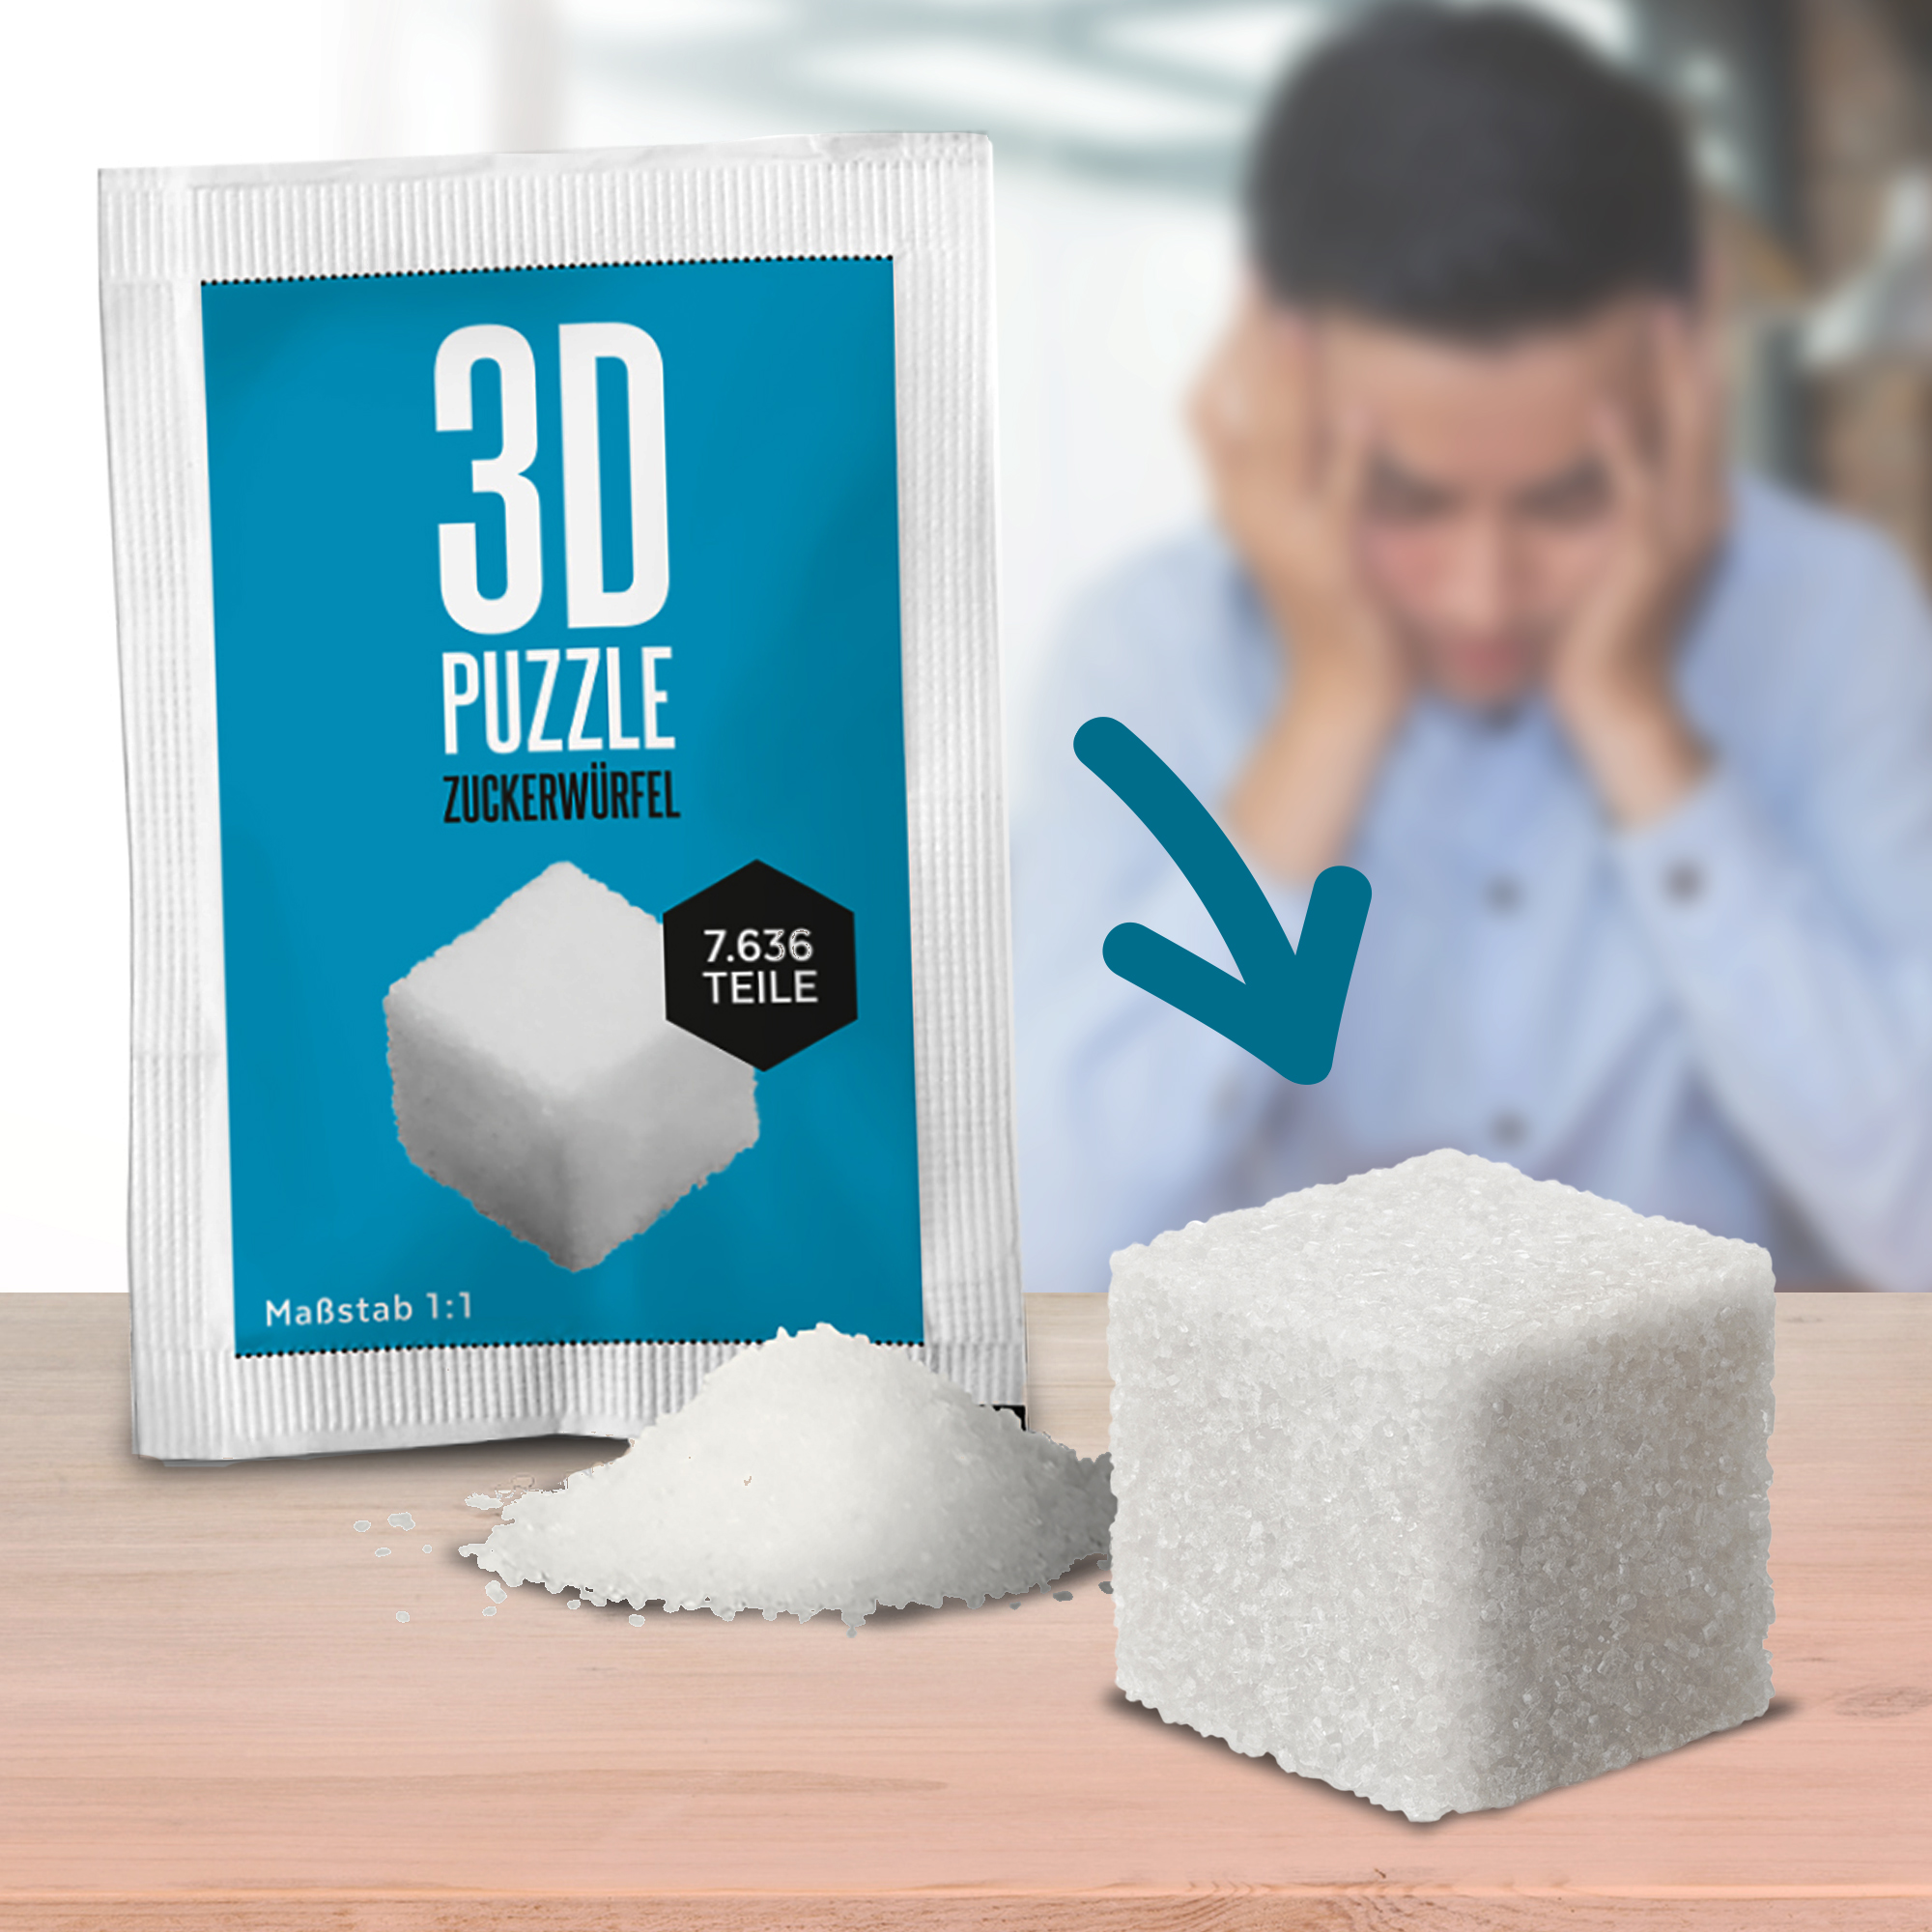 3D Puzzle - Zuckerwürfel 3909